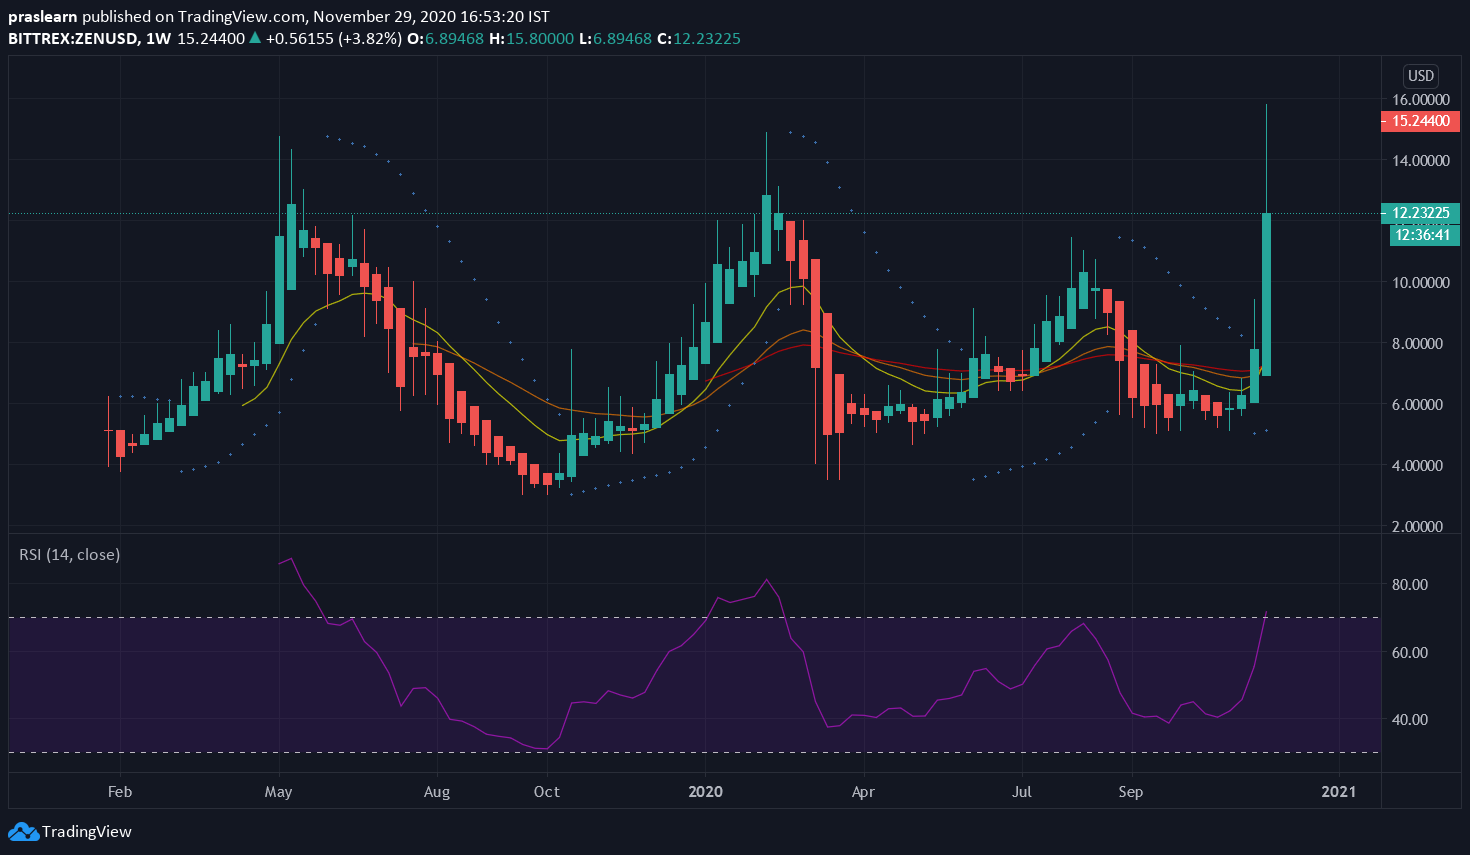 ZEN/USD Weekly Chart: TradingView